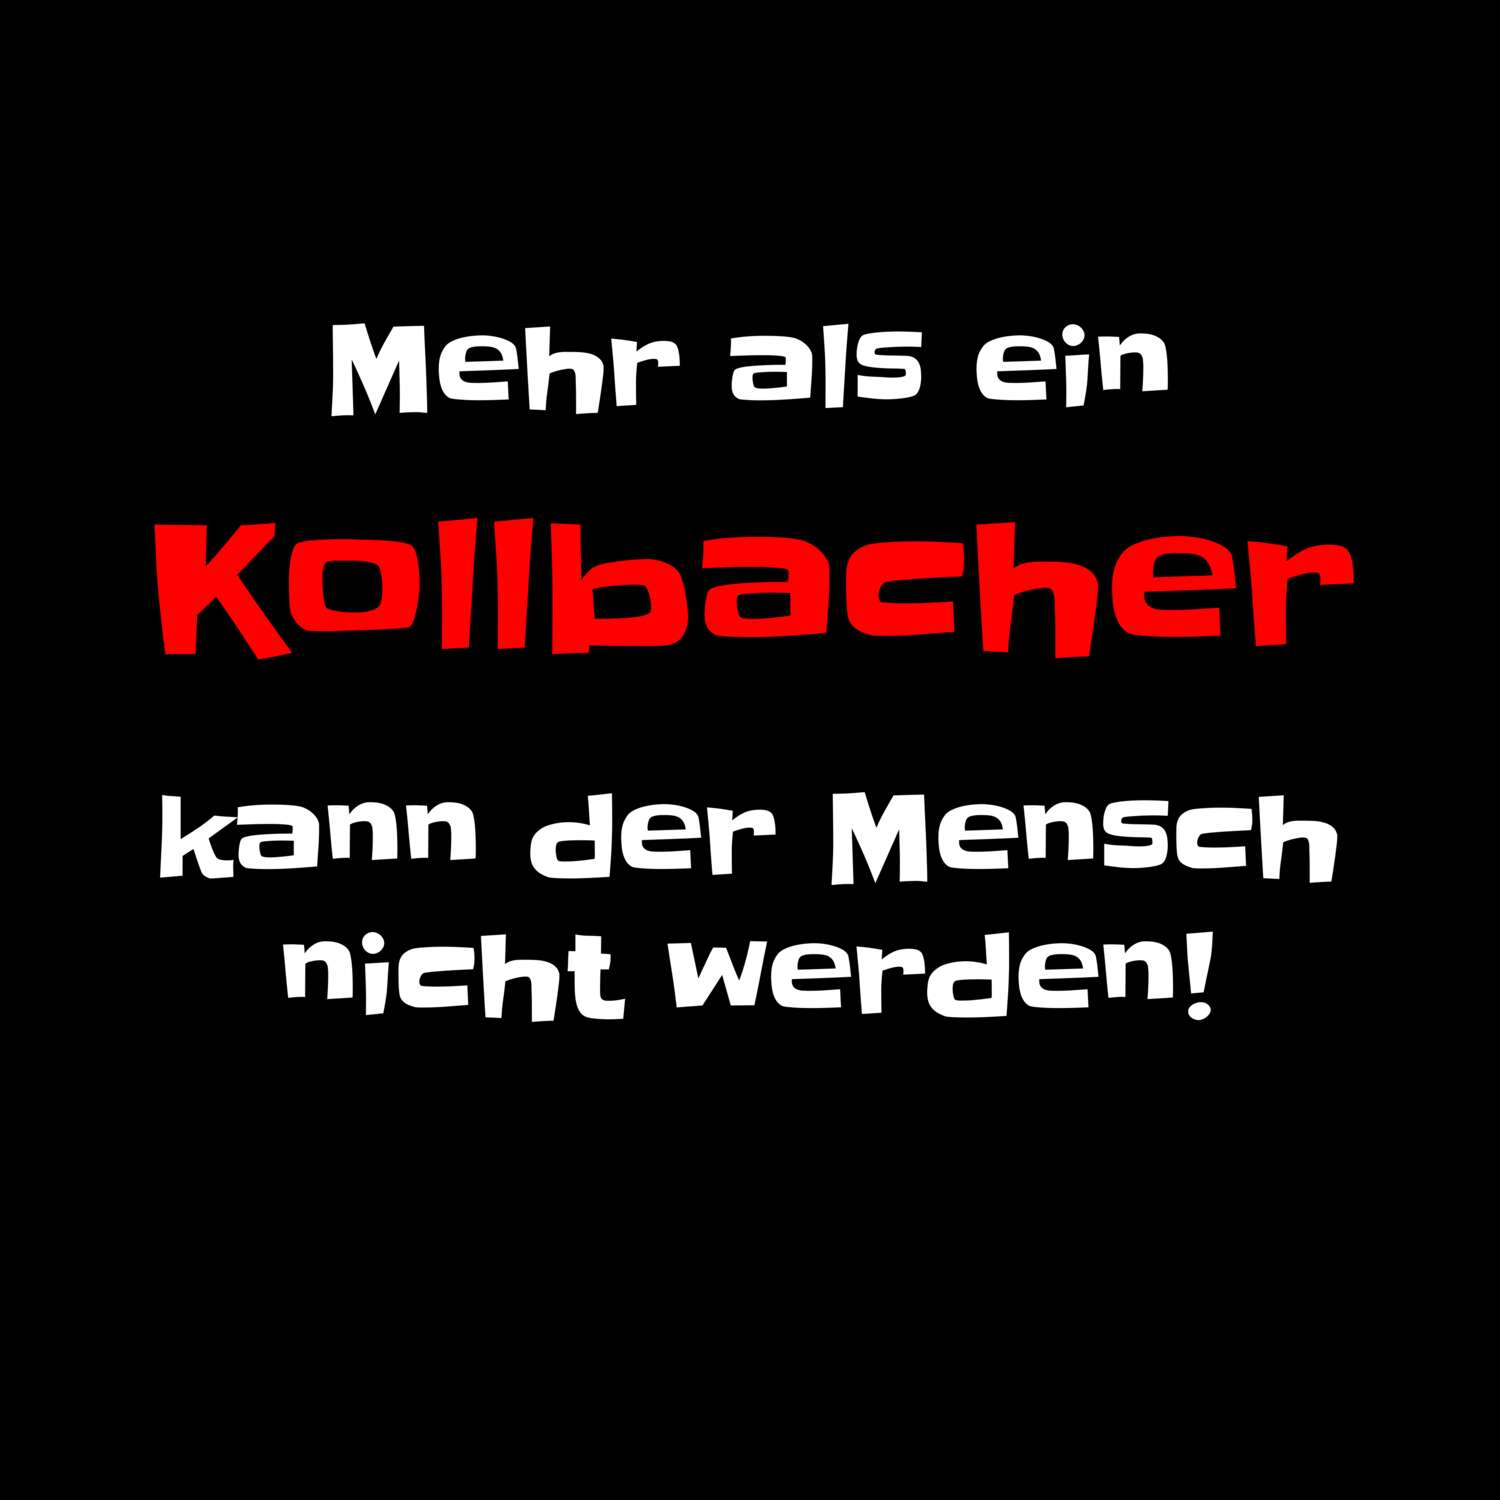 Kollbach T-Shirt »Mehr als ein«